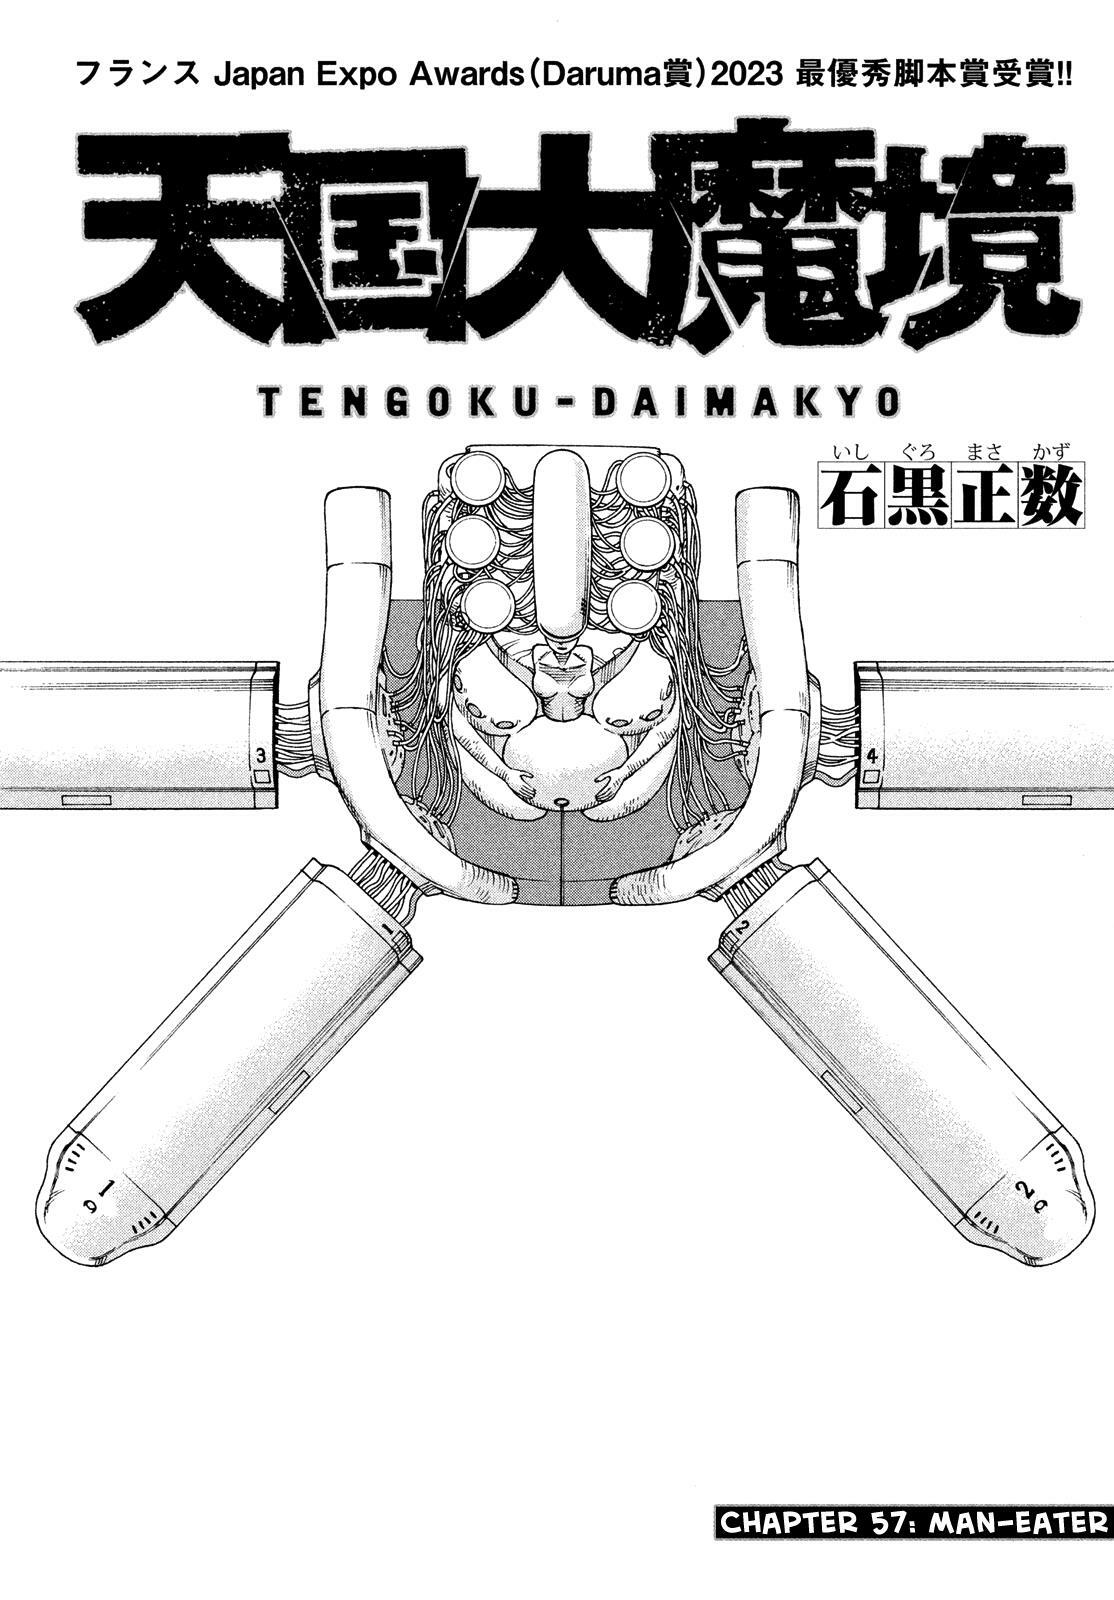 Read Tengoku Daimakyou Vol.4 Chapter 20: Immortalites ➂ - Manganelo